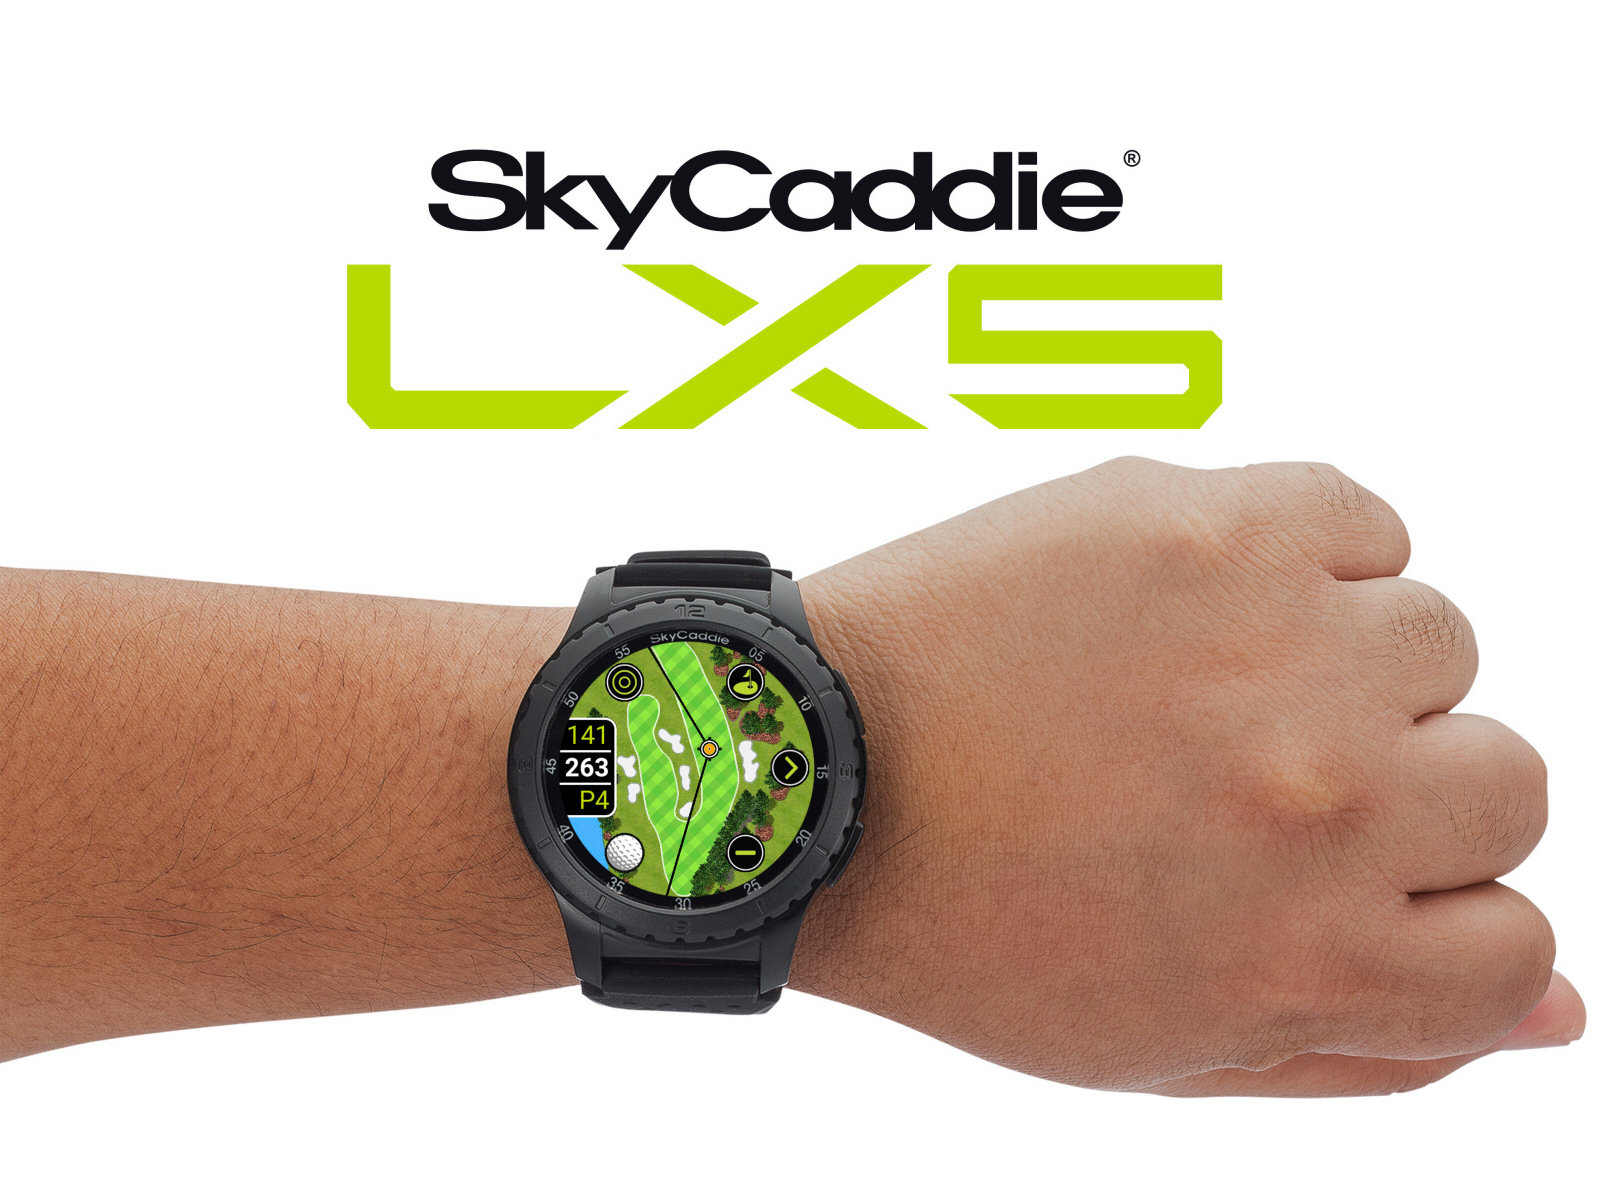 skycaddie_lx5_wrist_web_1600x1200